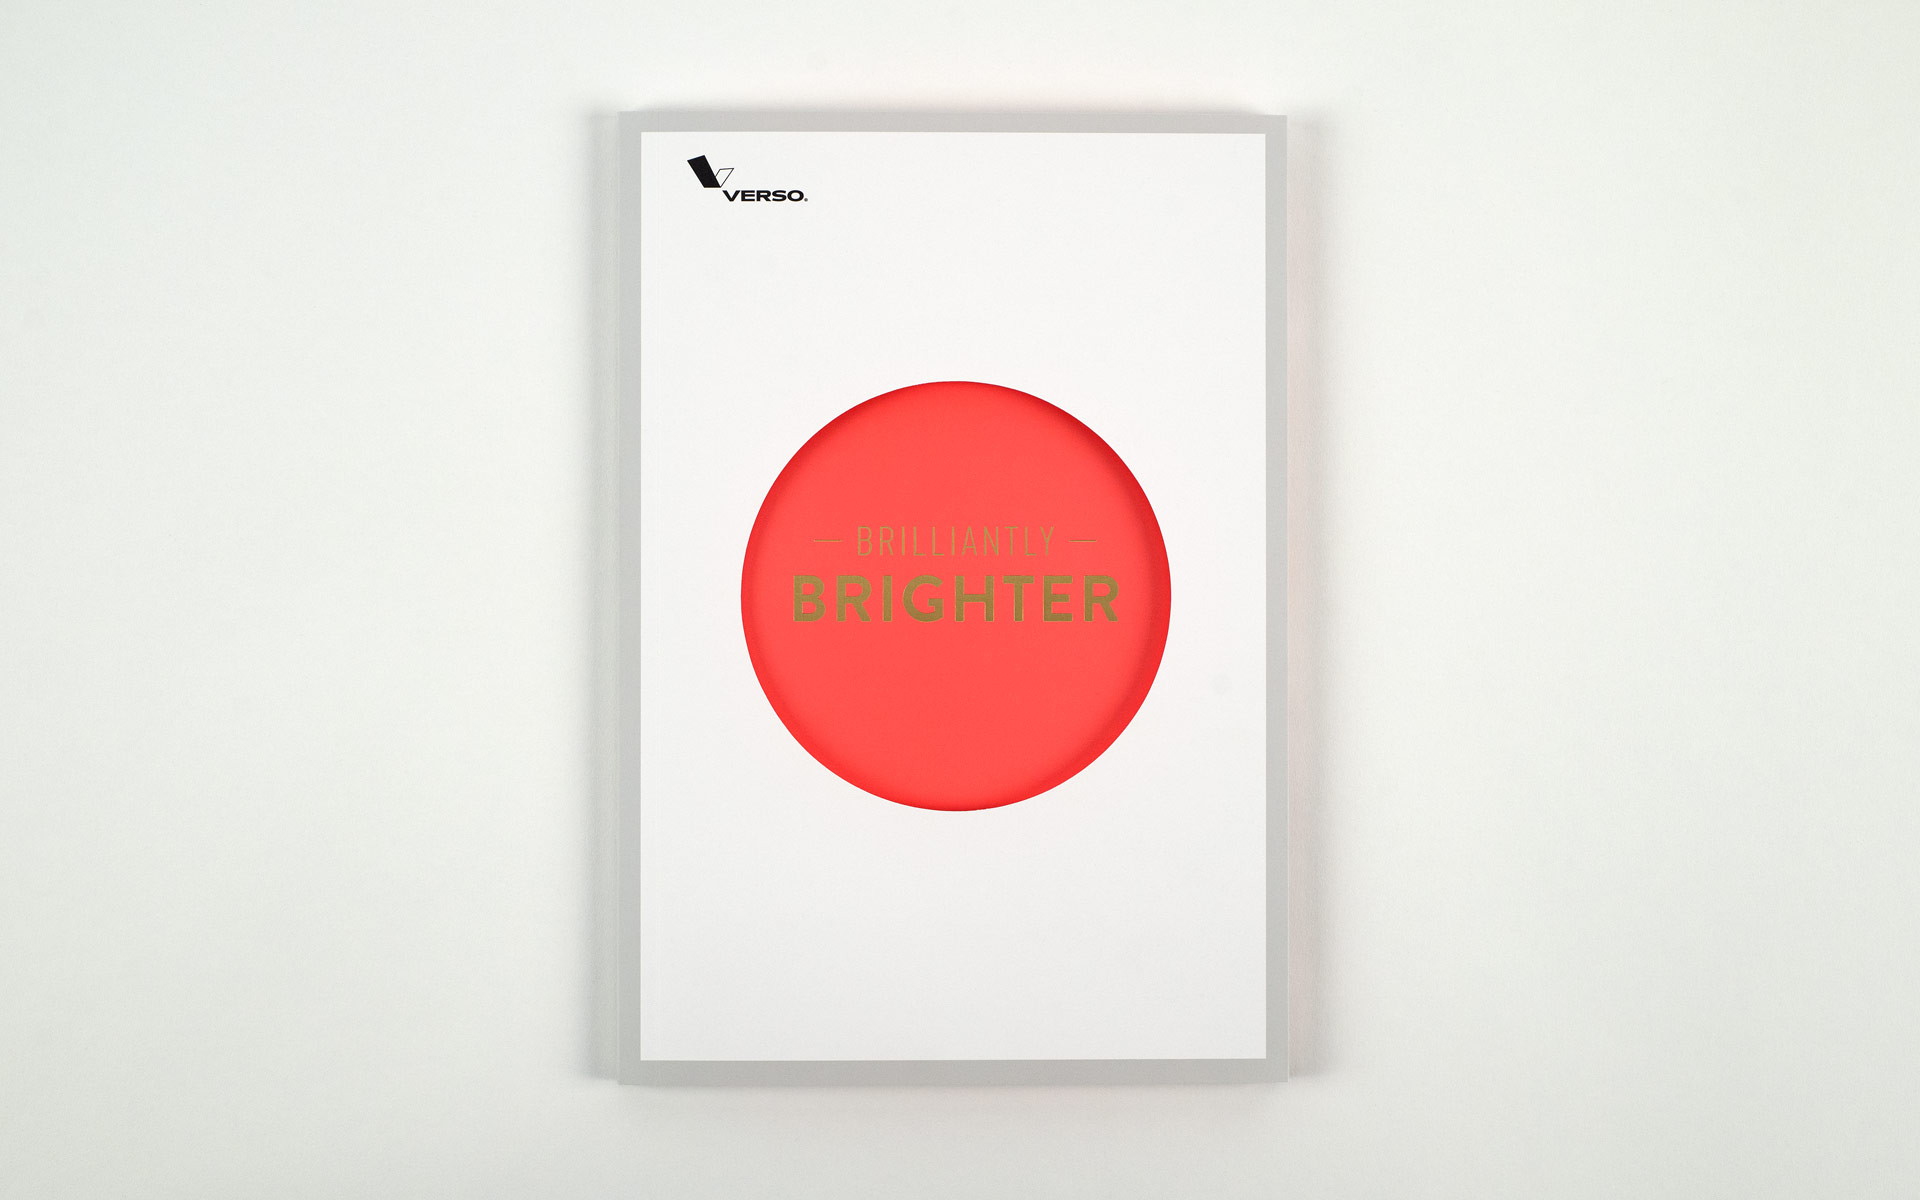 Verso Brilliantly Brighter Brochure